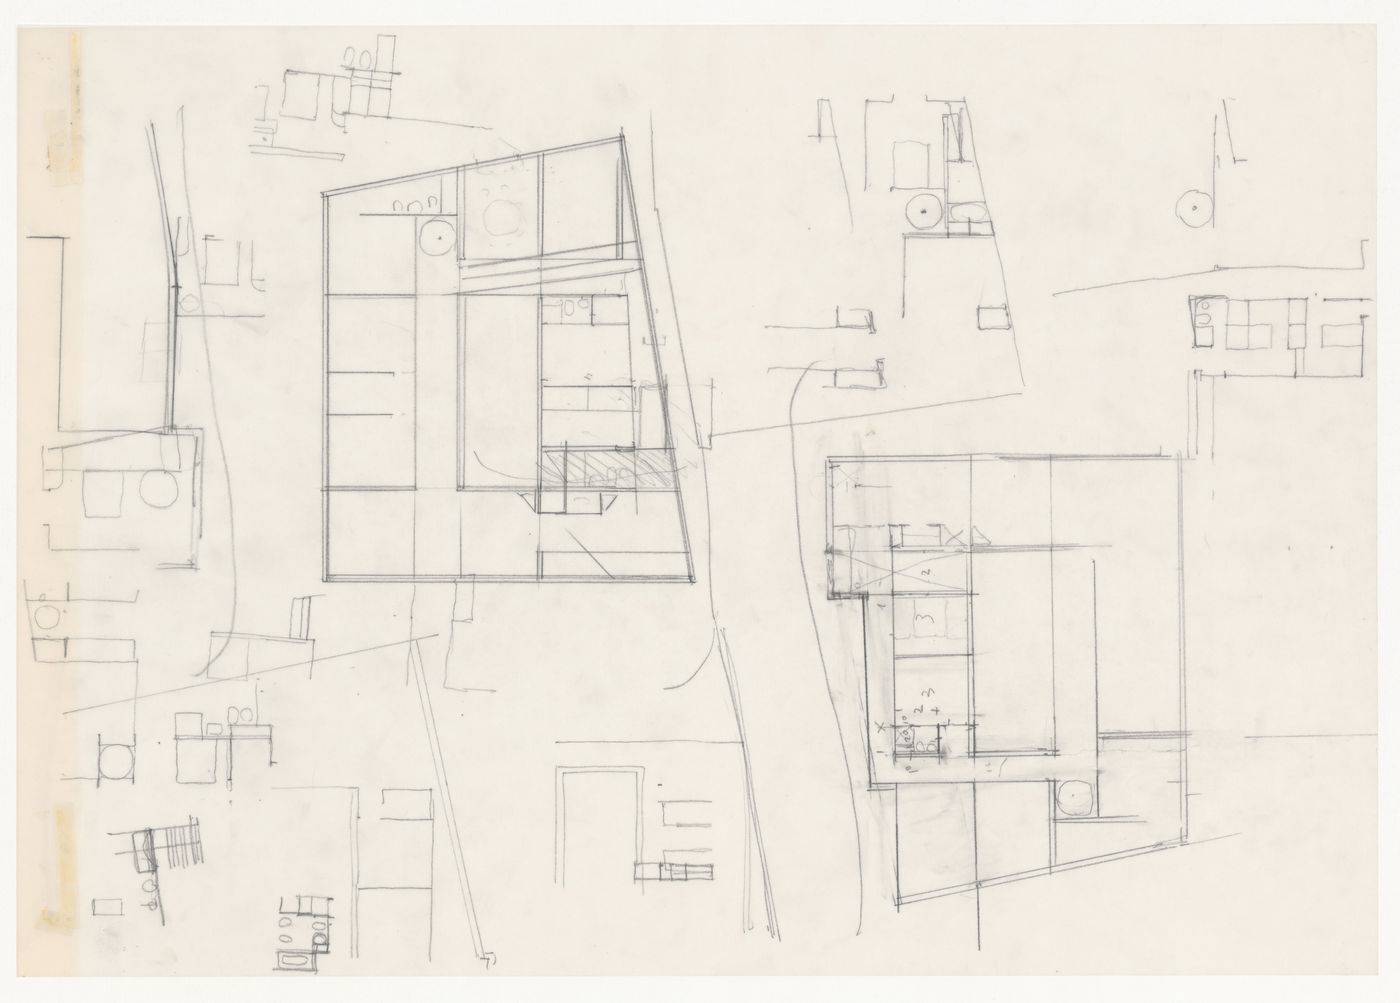 Plans and sketches for Casa Mário Bahia [Mário Bahia house], Gondomar, Portugal